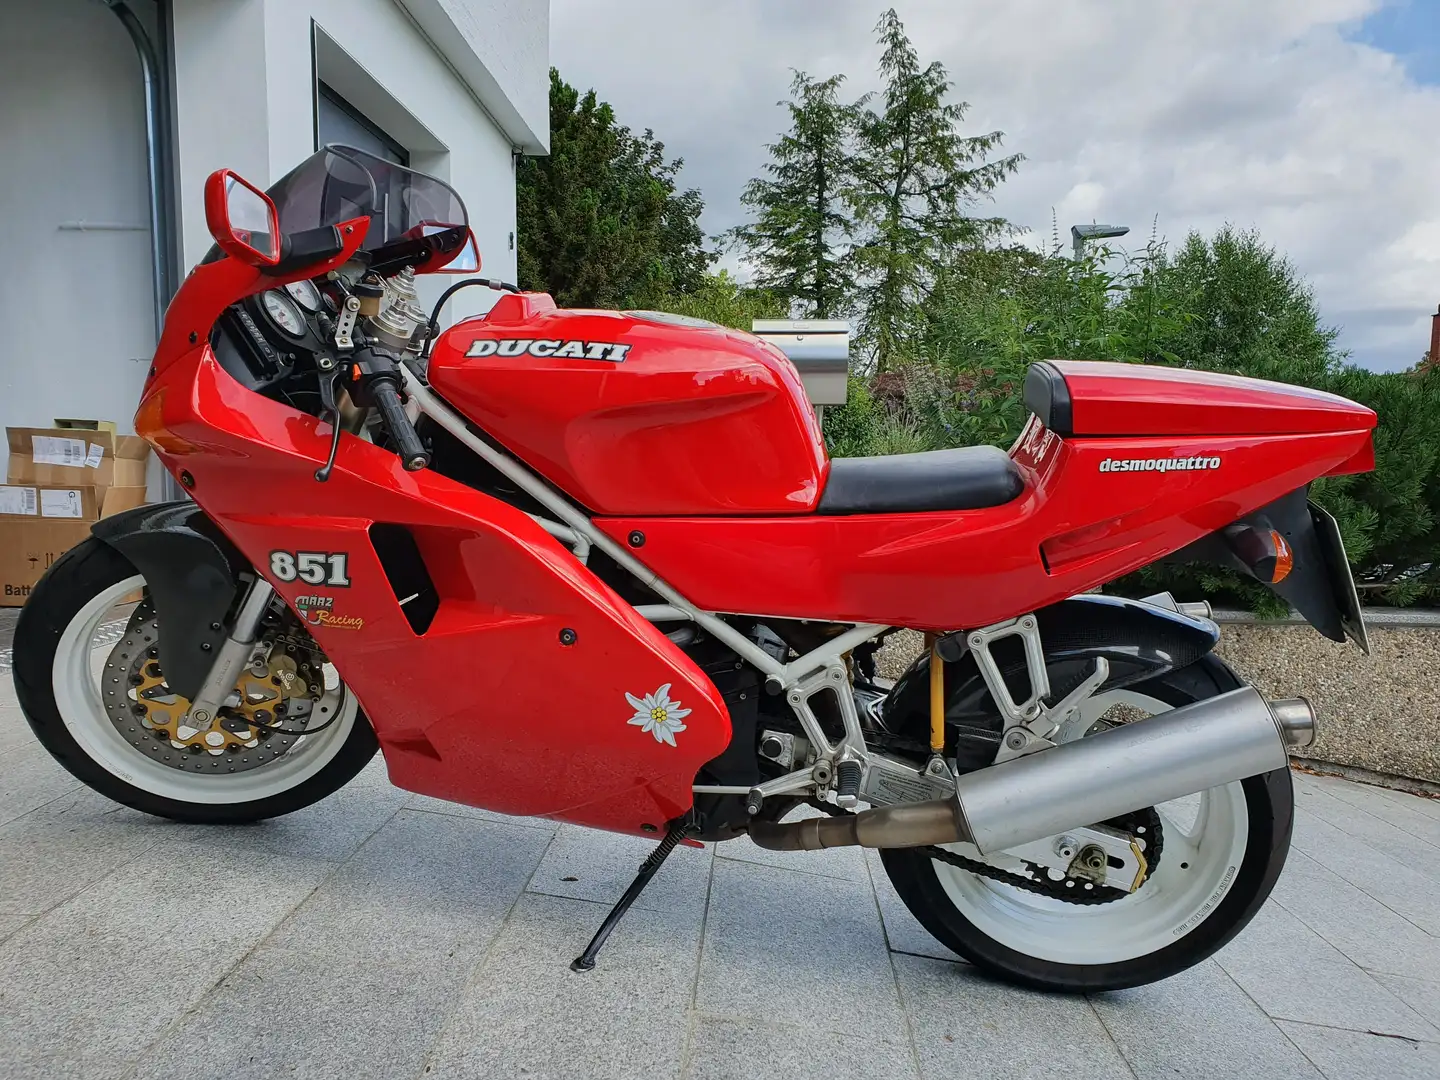 Ducati 851 S3 Red - 2